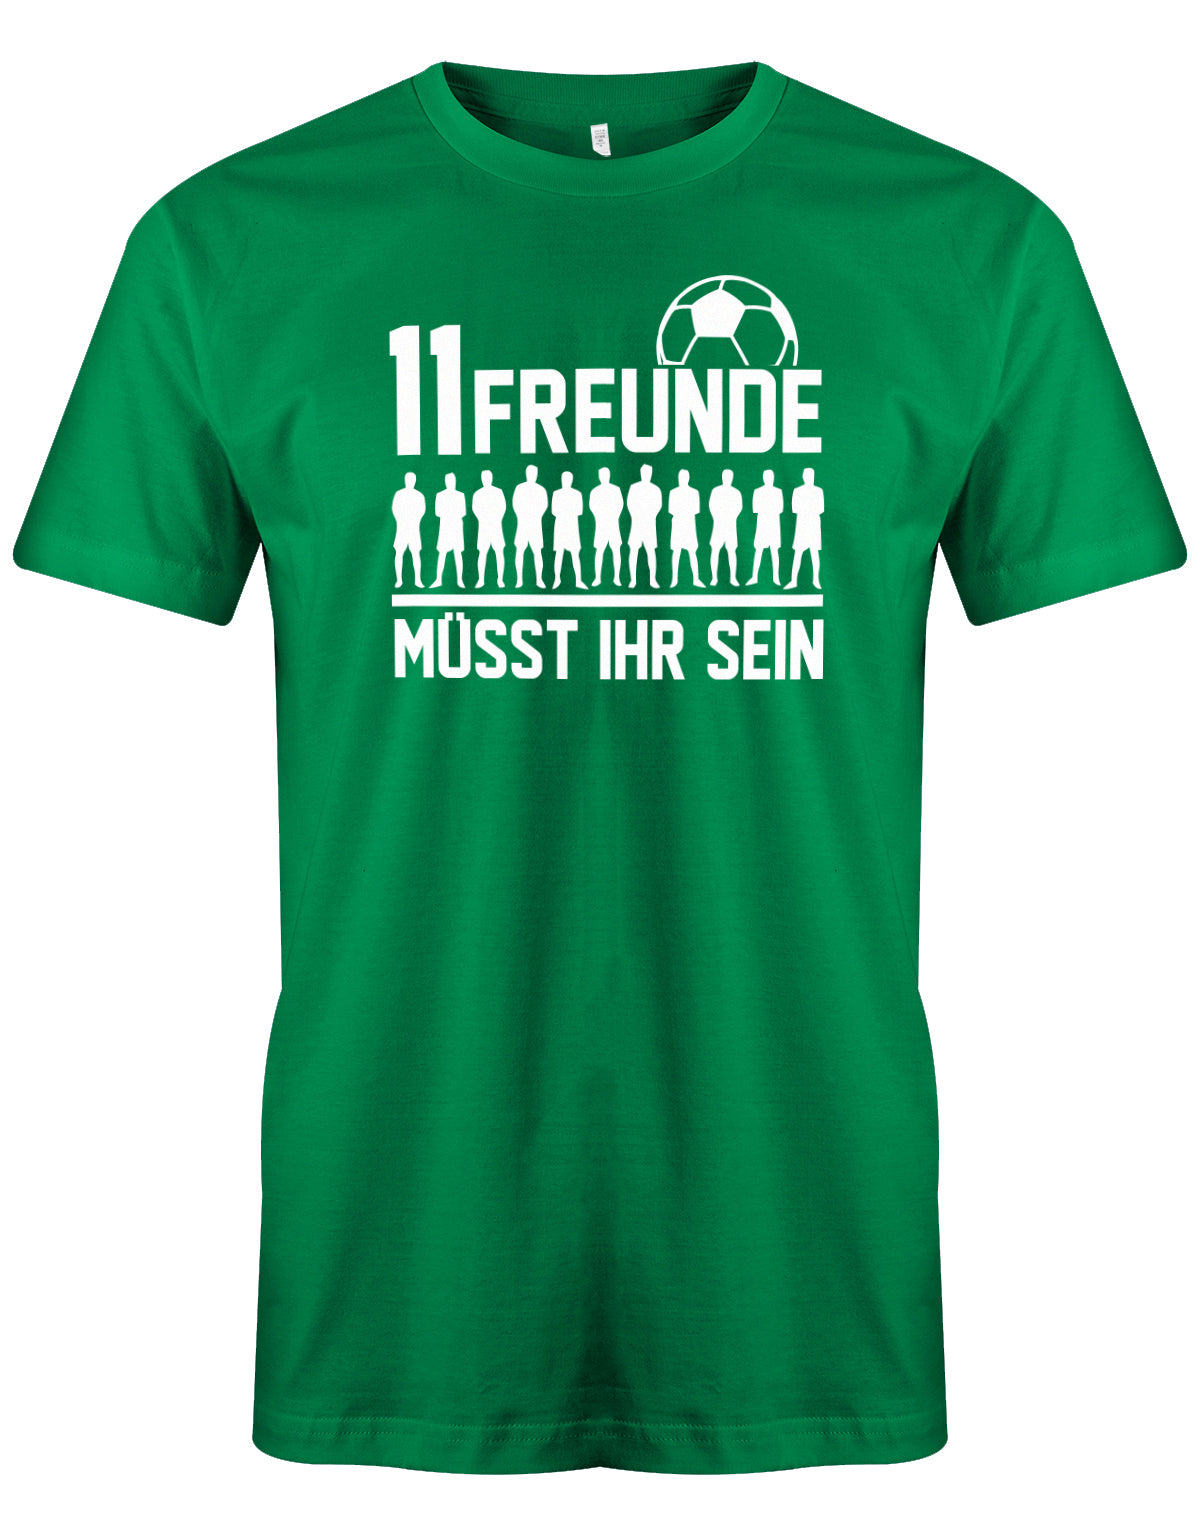 11 Freunde müsst ihr sein - Fußball - Herren T-Shirt Grün